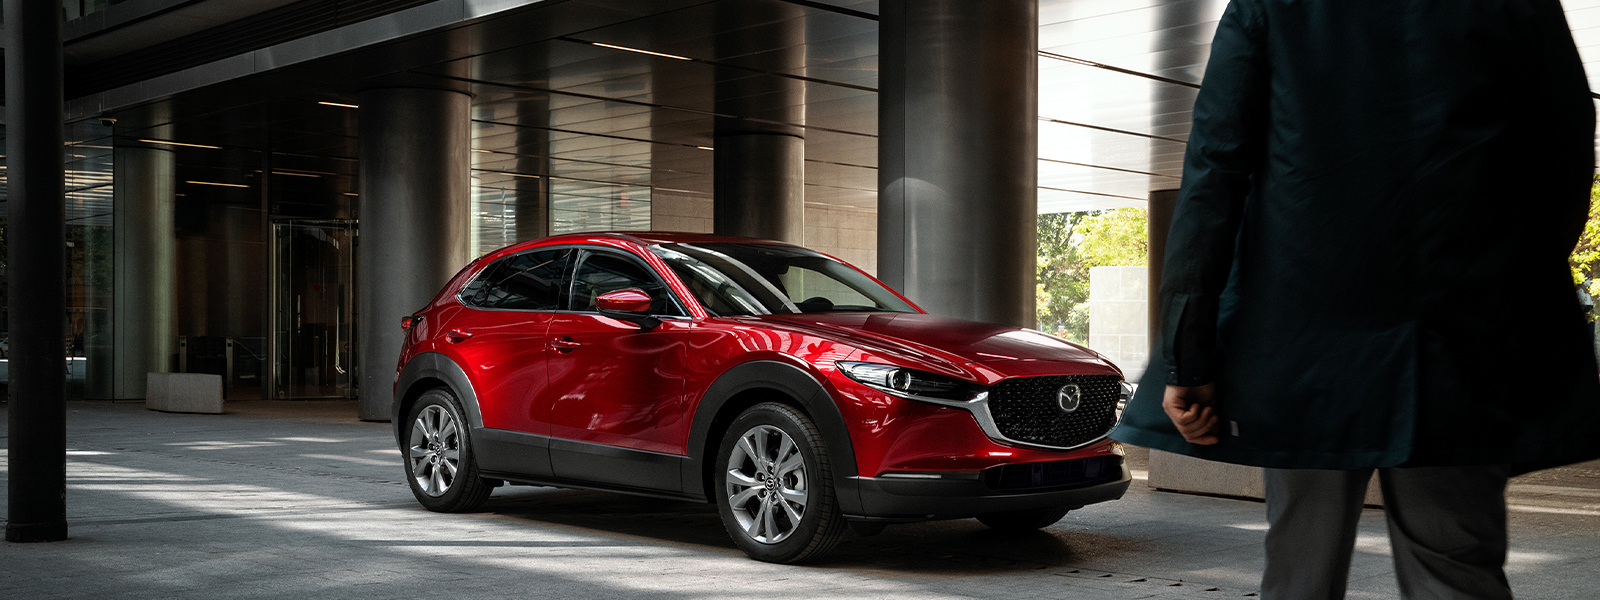 Une Mazda rouge stationnée devant des colonnes grises